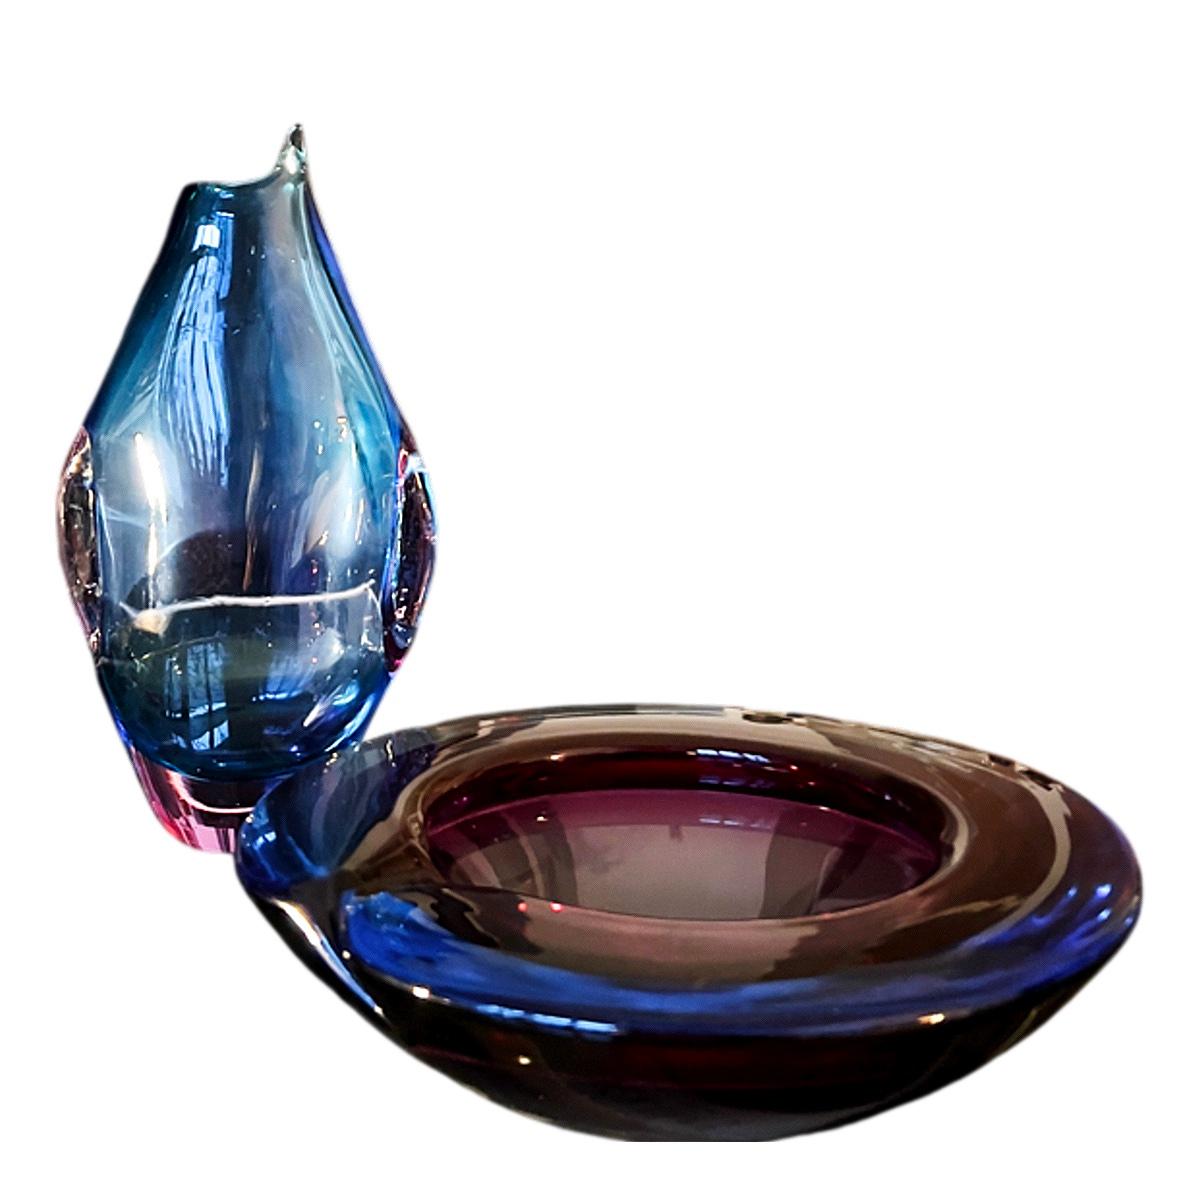 Ce bol fait main en verre de Murano soufflé à la bouche, créé selon la technique traditionnelle du Sommerso (une méthode qui consiste à superposer plusieurs couleurs de verre dans un seul objet), est remarquablement grand pour ce type d'objet d'art.